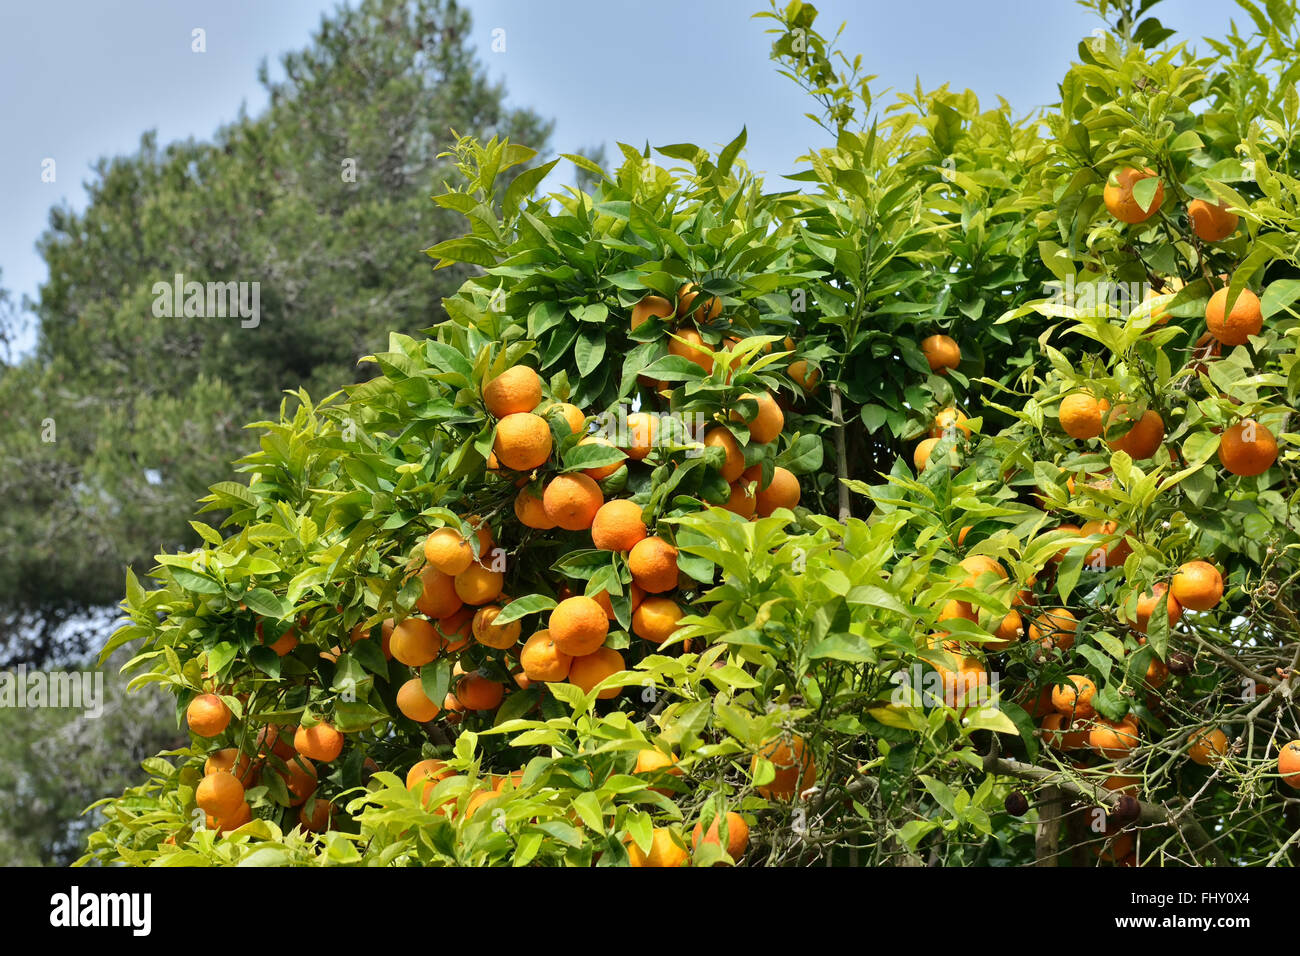 Ripe oranges in Mediterranean garden Stock Photo